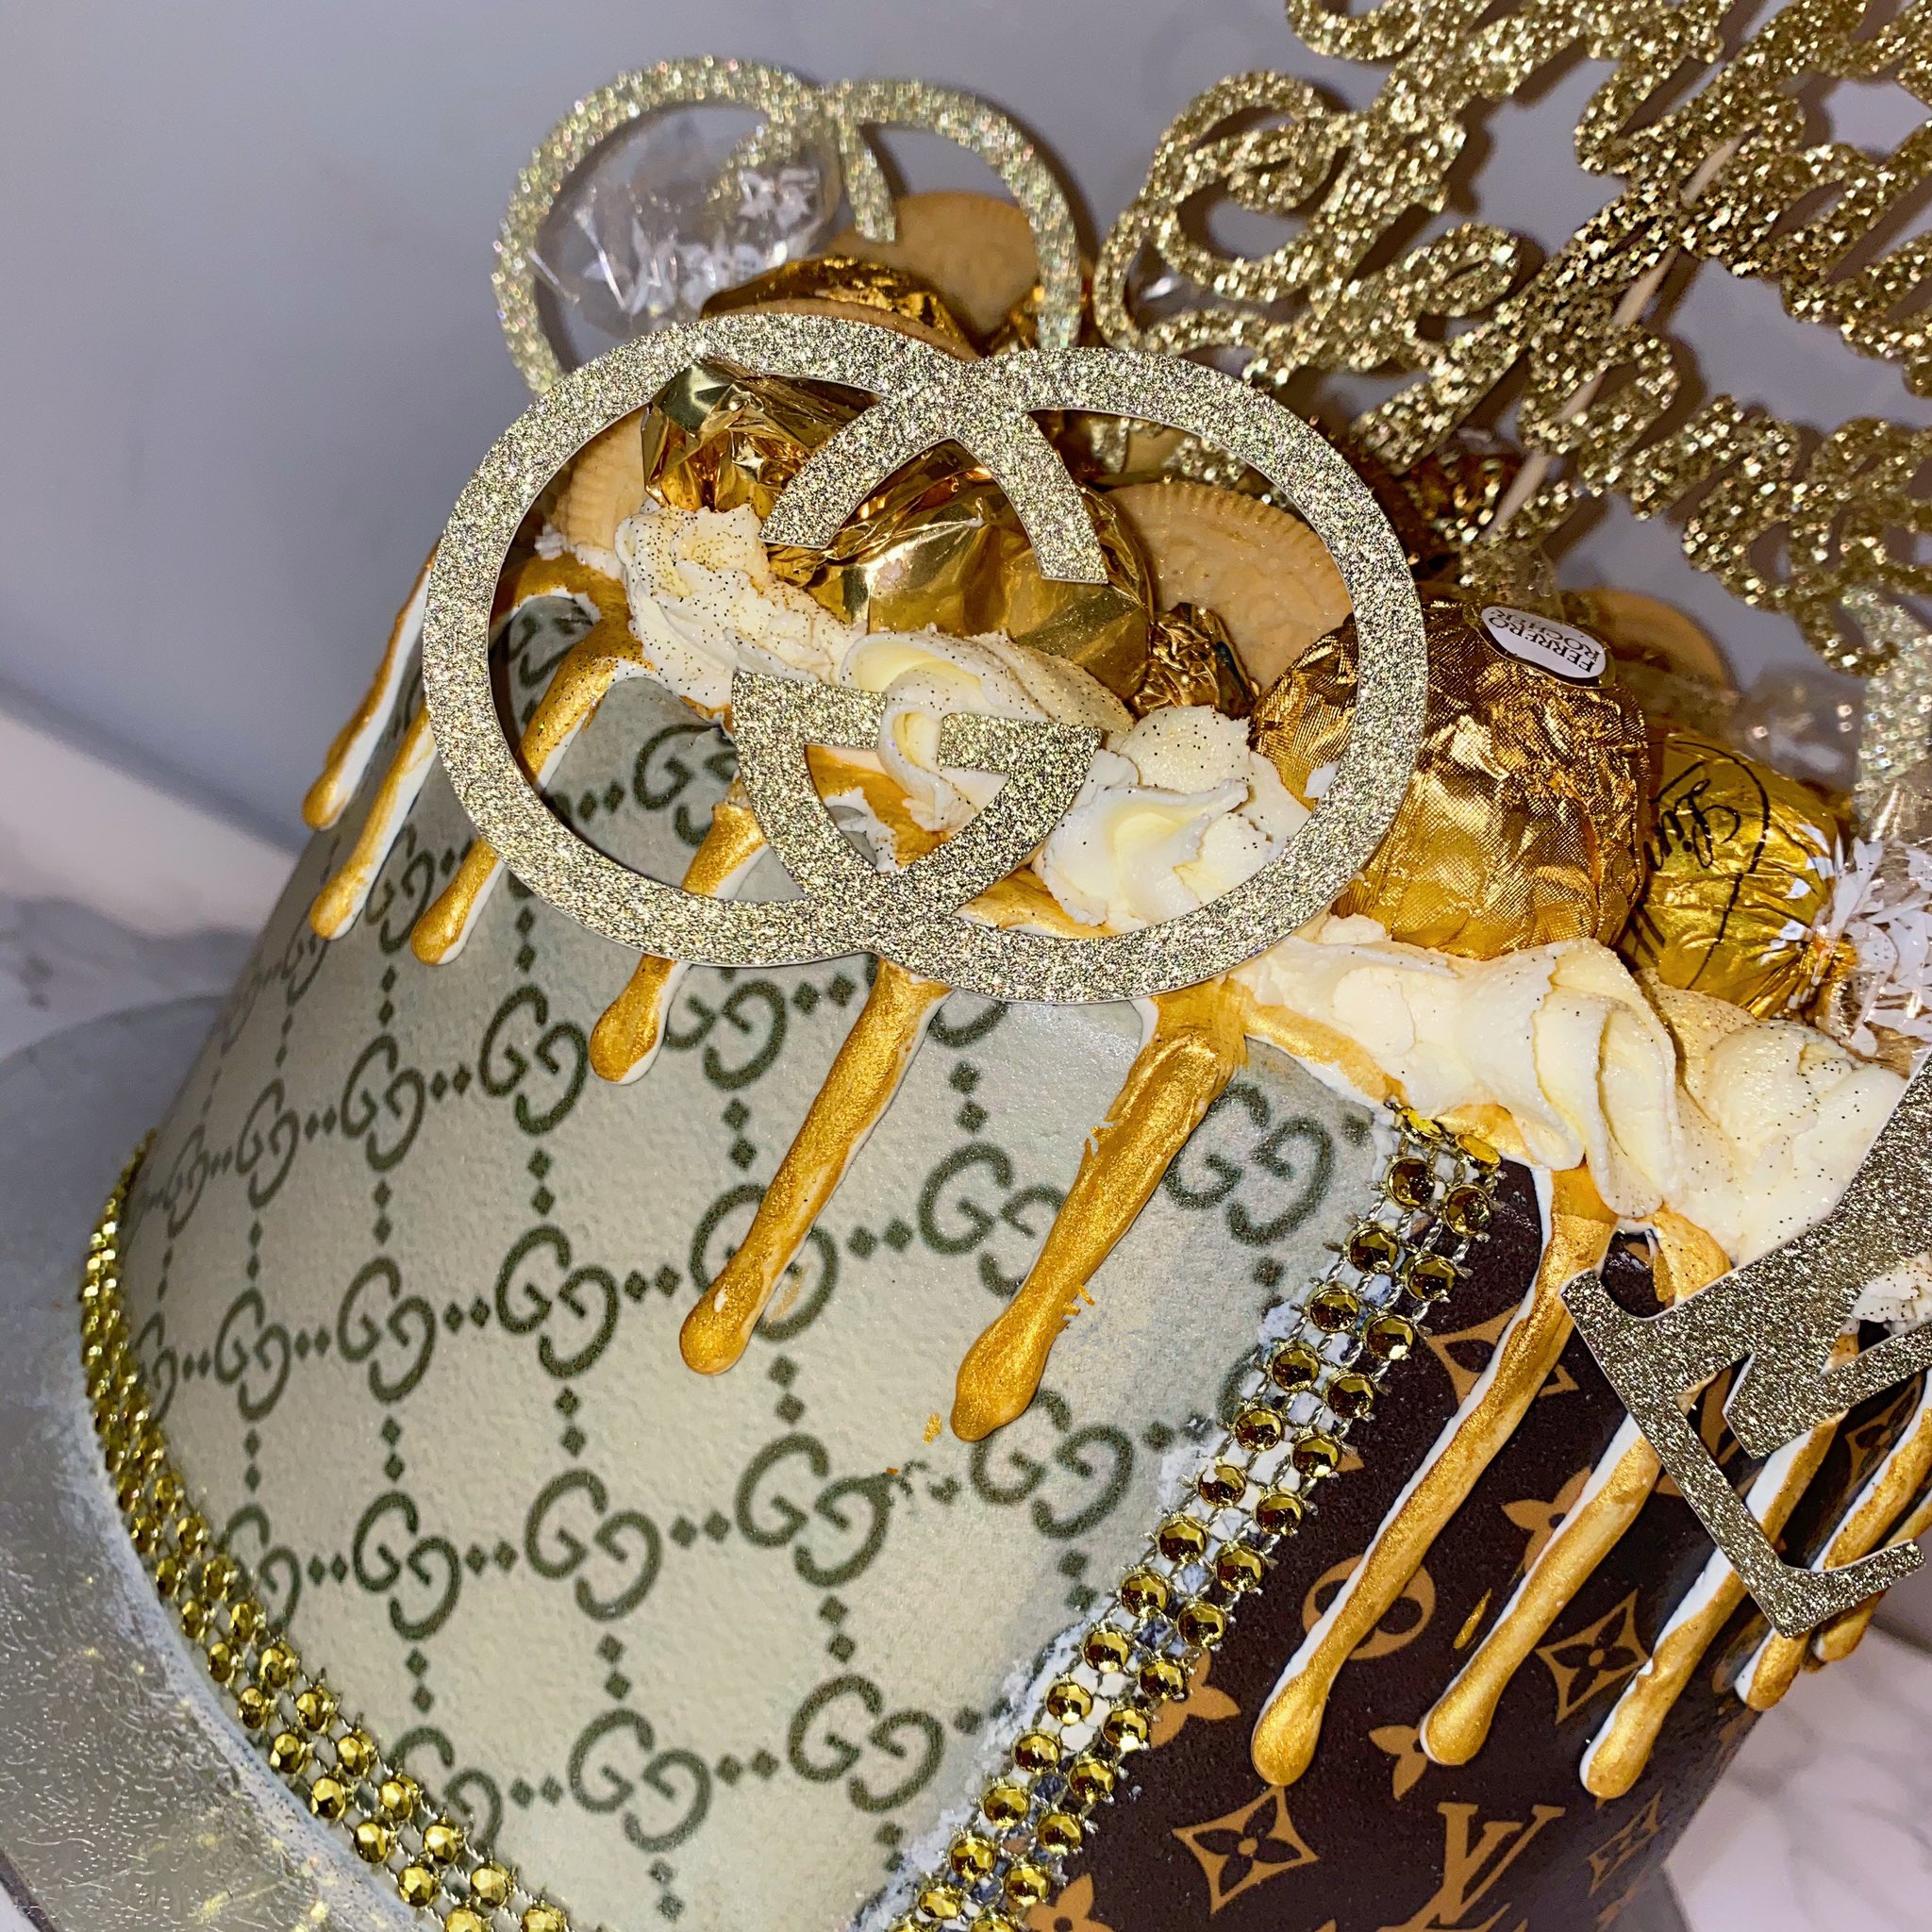 Abbie's AngelCakes 🍰 on X: Half Gucci / Half Louis Vuitton Cake